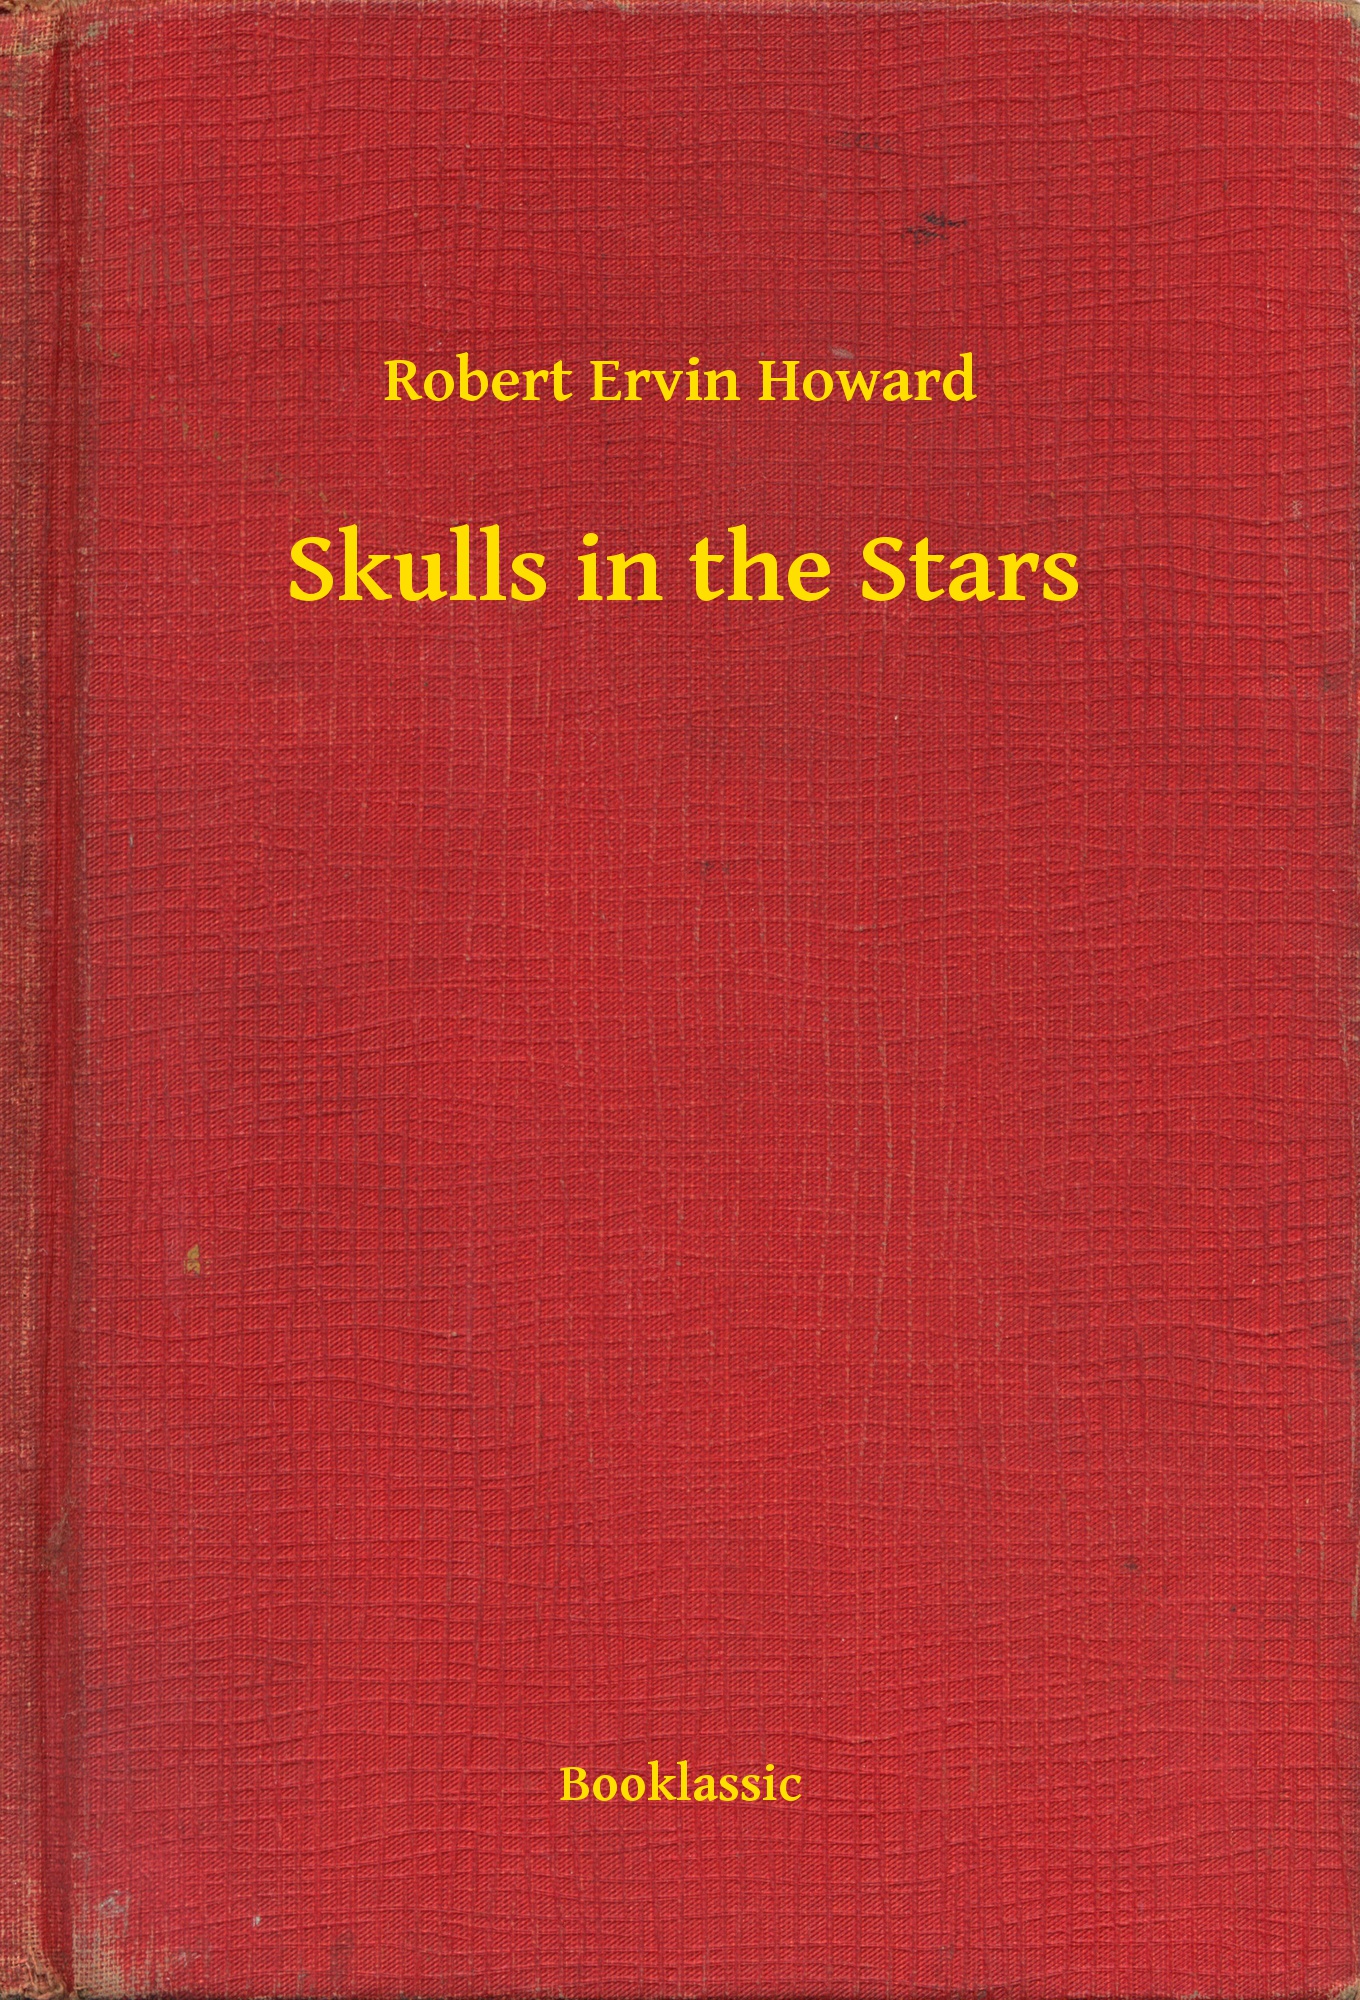 Skulls in the Stars